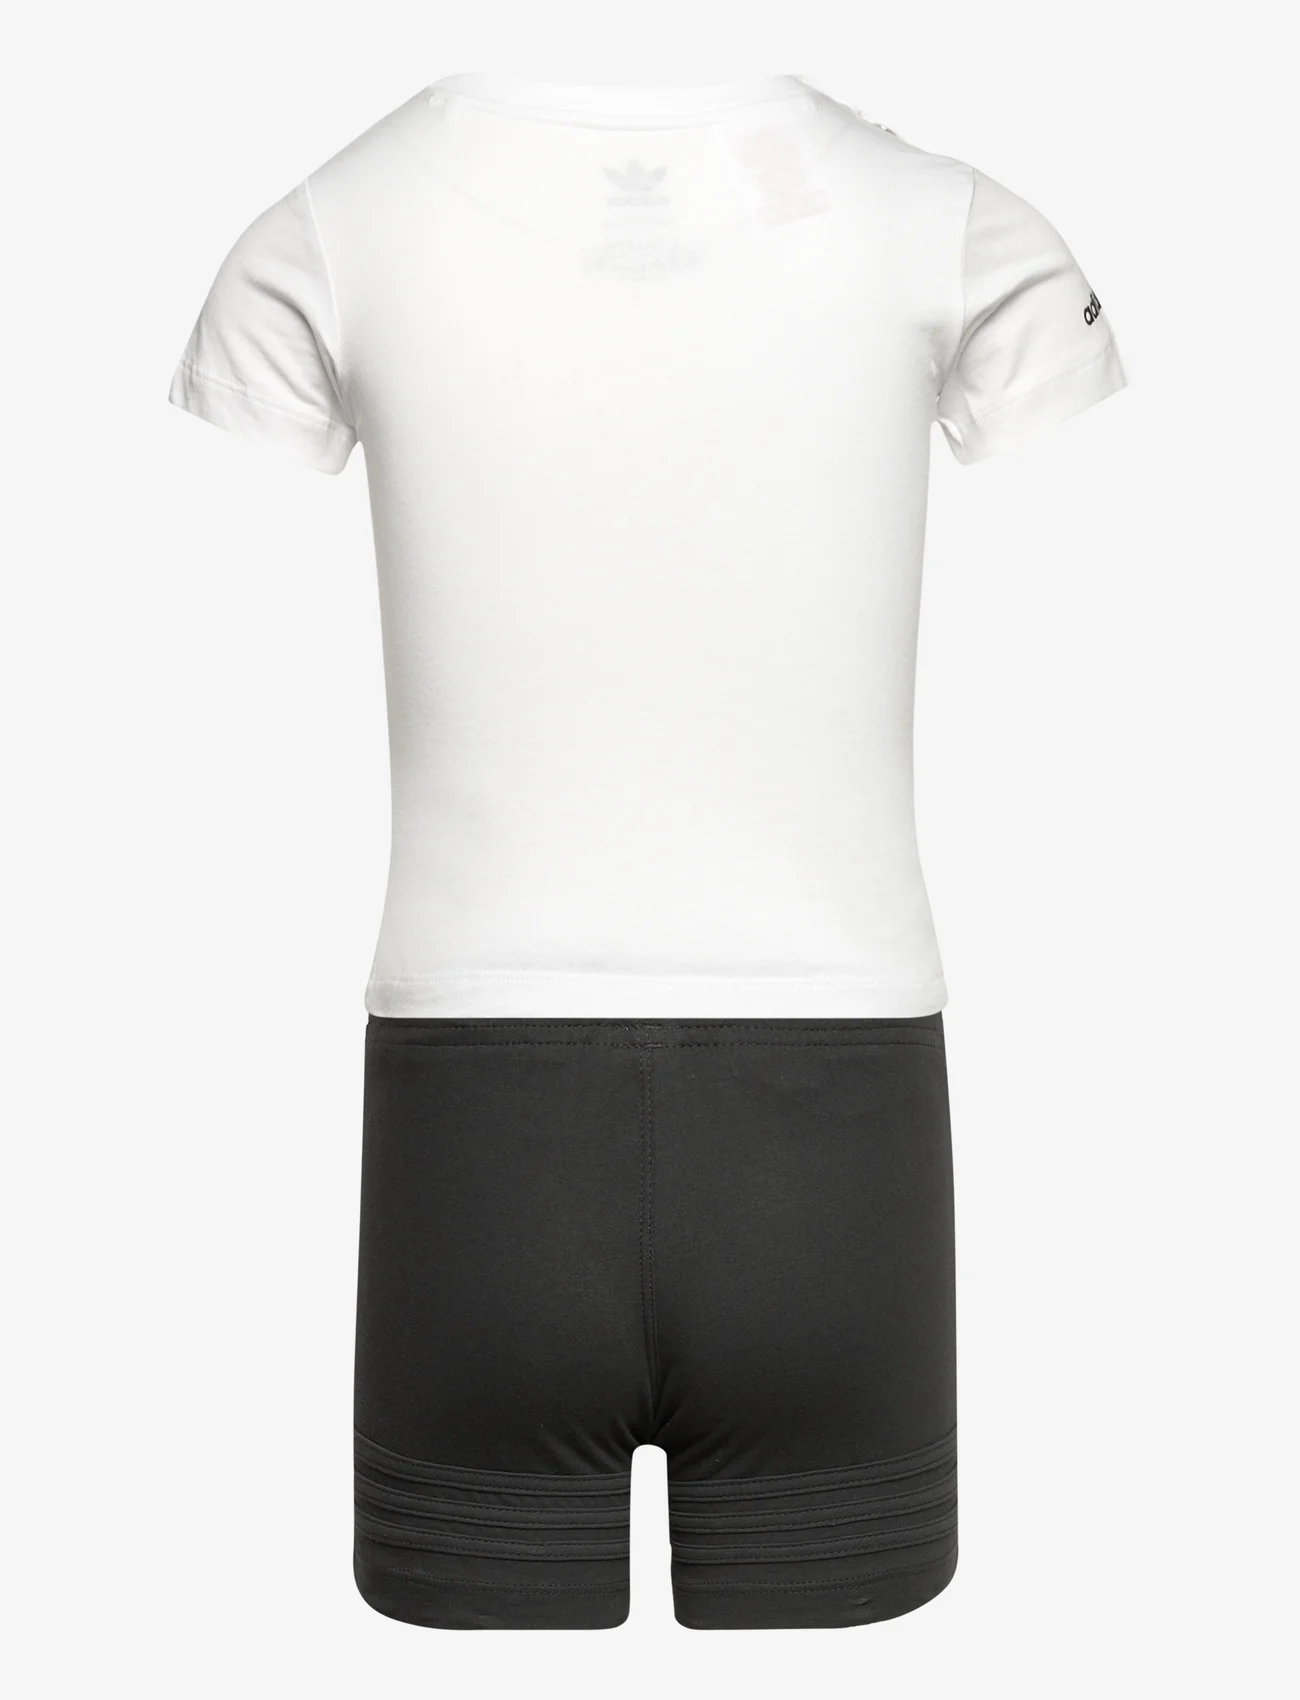 adidas Originals - SPRT Collection Shorts and Tee Set - mažiausios kainos - white - 1